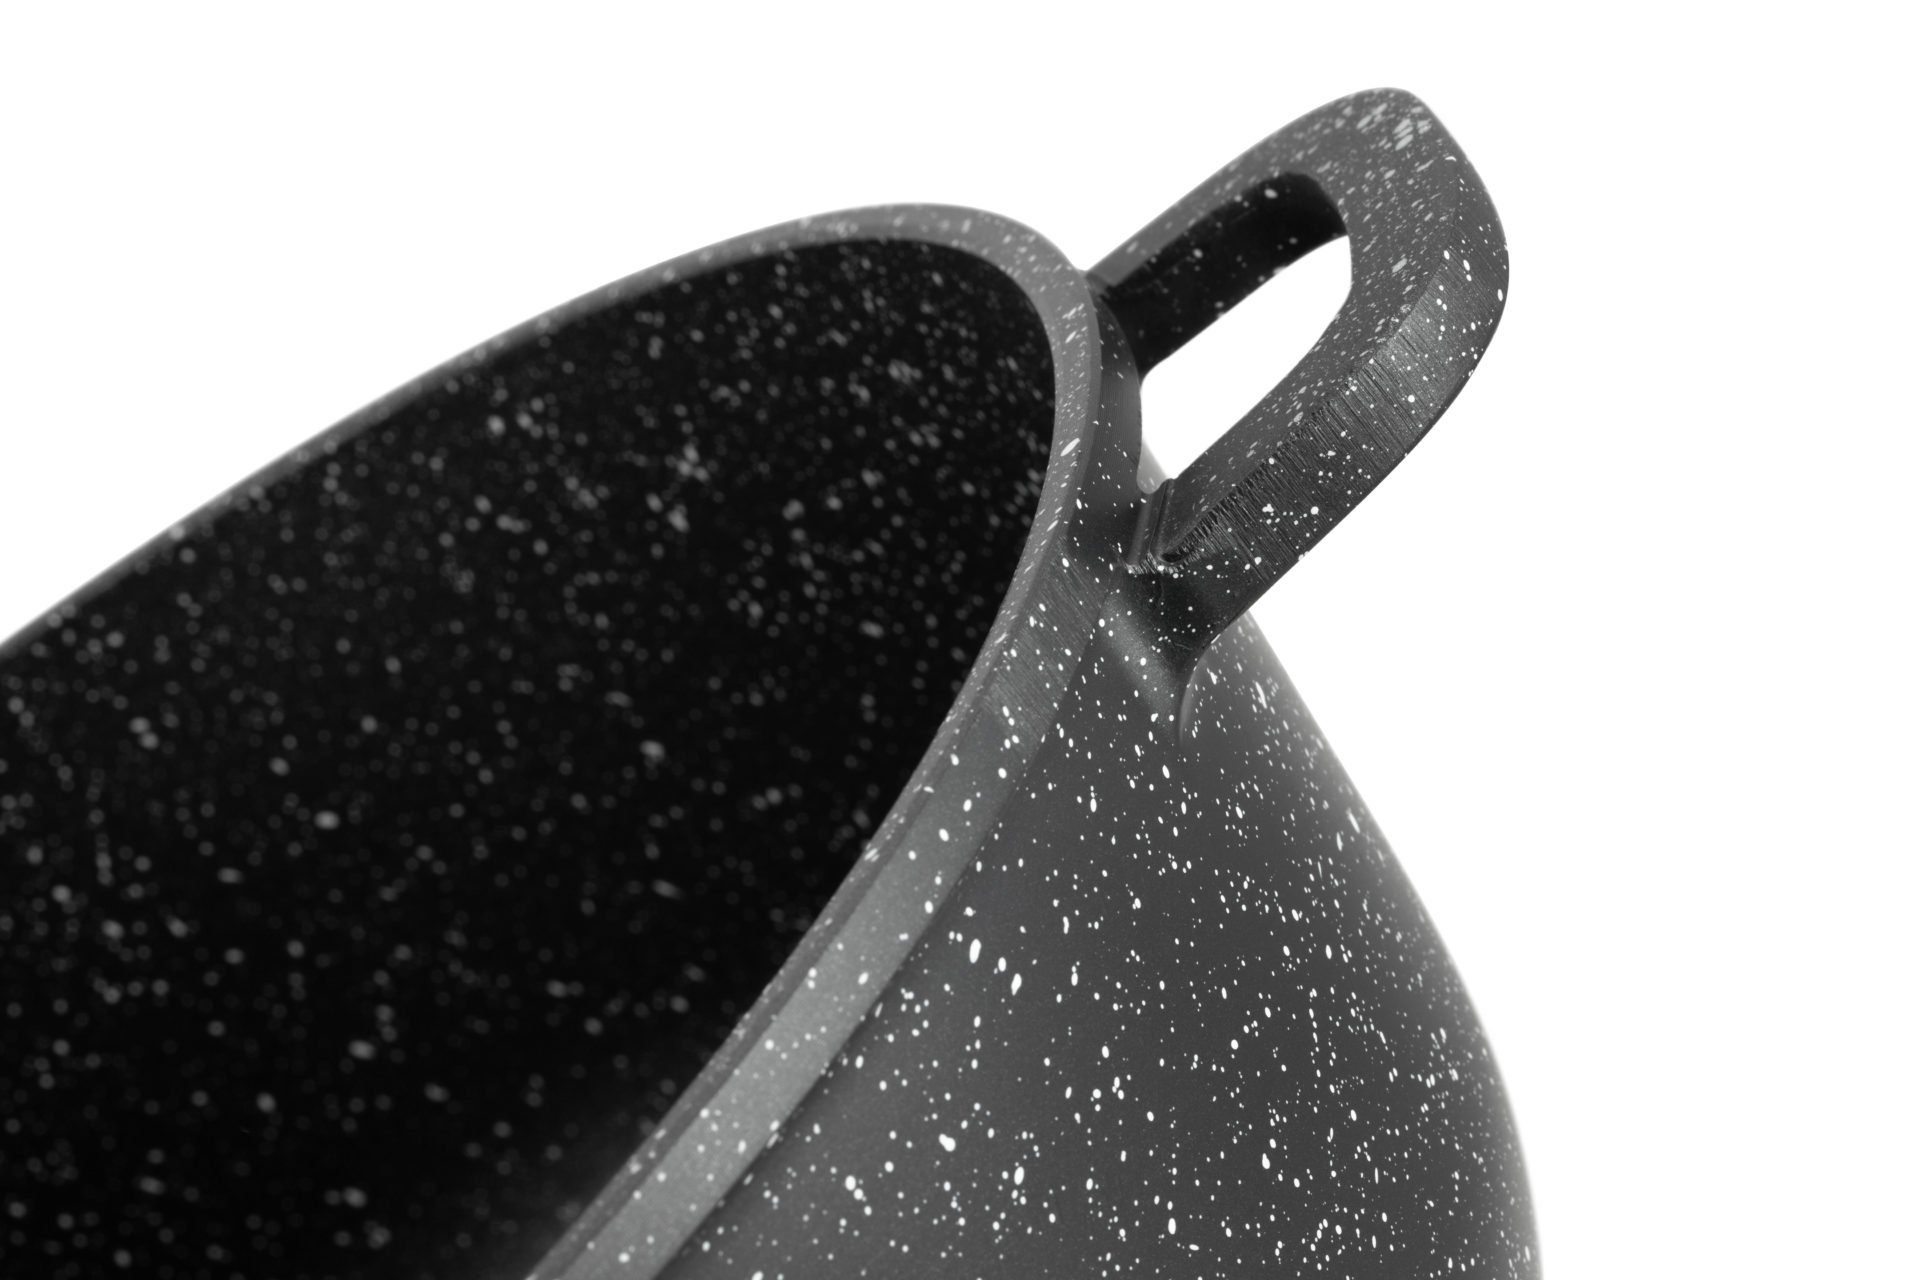 Edenberg Topf-Set Schöne ideale (8-tlg., schwarze Keramik des Zeitloses 6,8L/4,5L/2,3L/1,3L, Topfset, Töpfe, Geschenkidee) Topfsets. Design Eine Aluminium